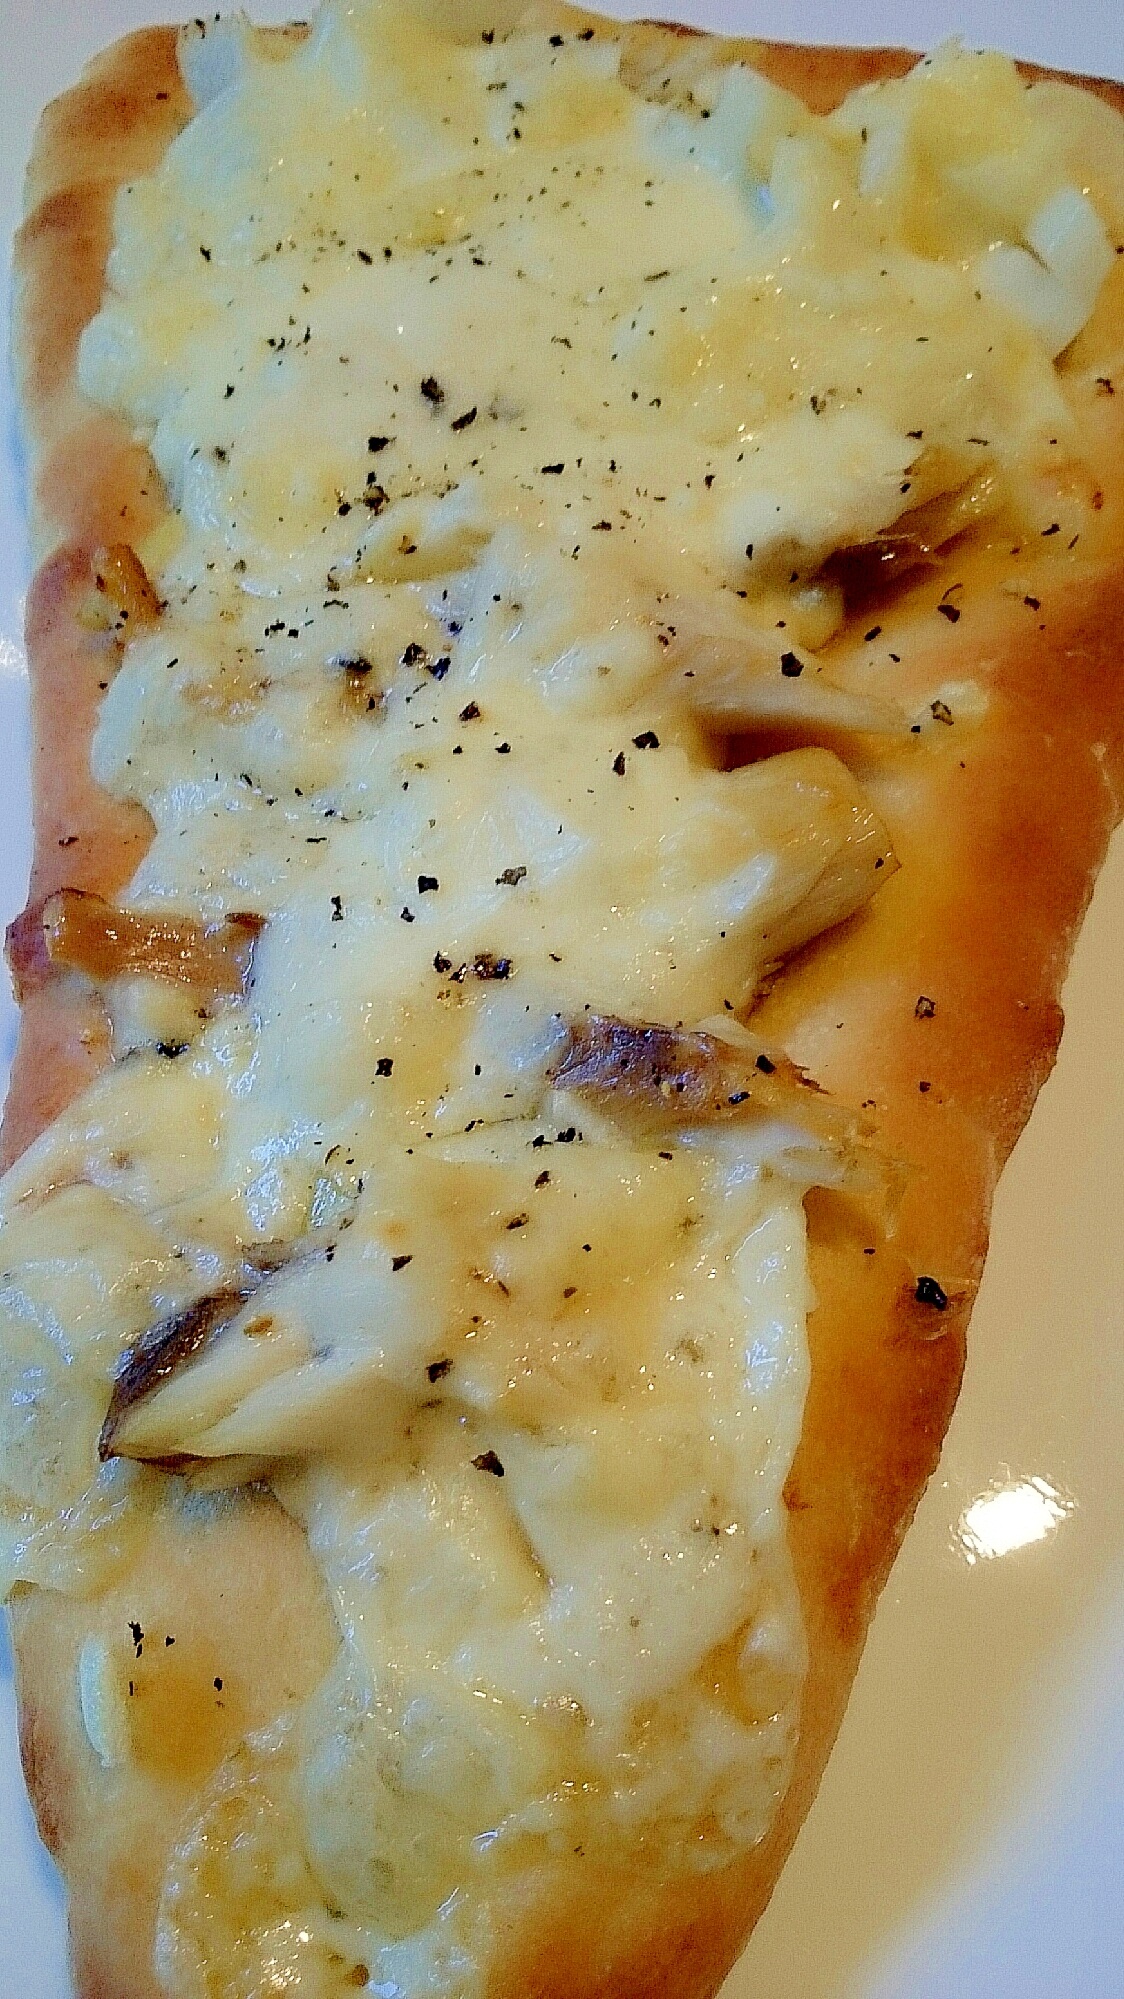 サバのピザ?!はい、サバのピザです。